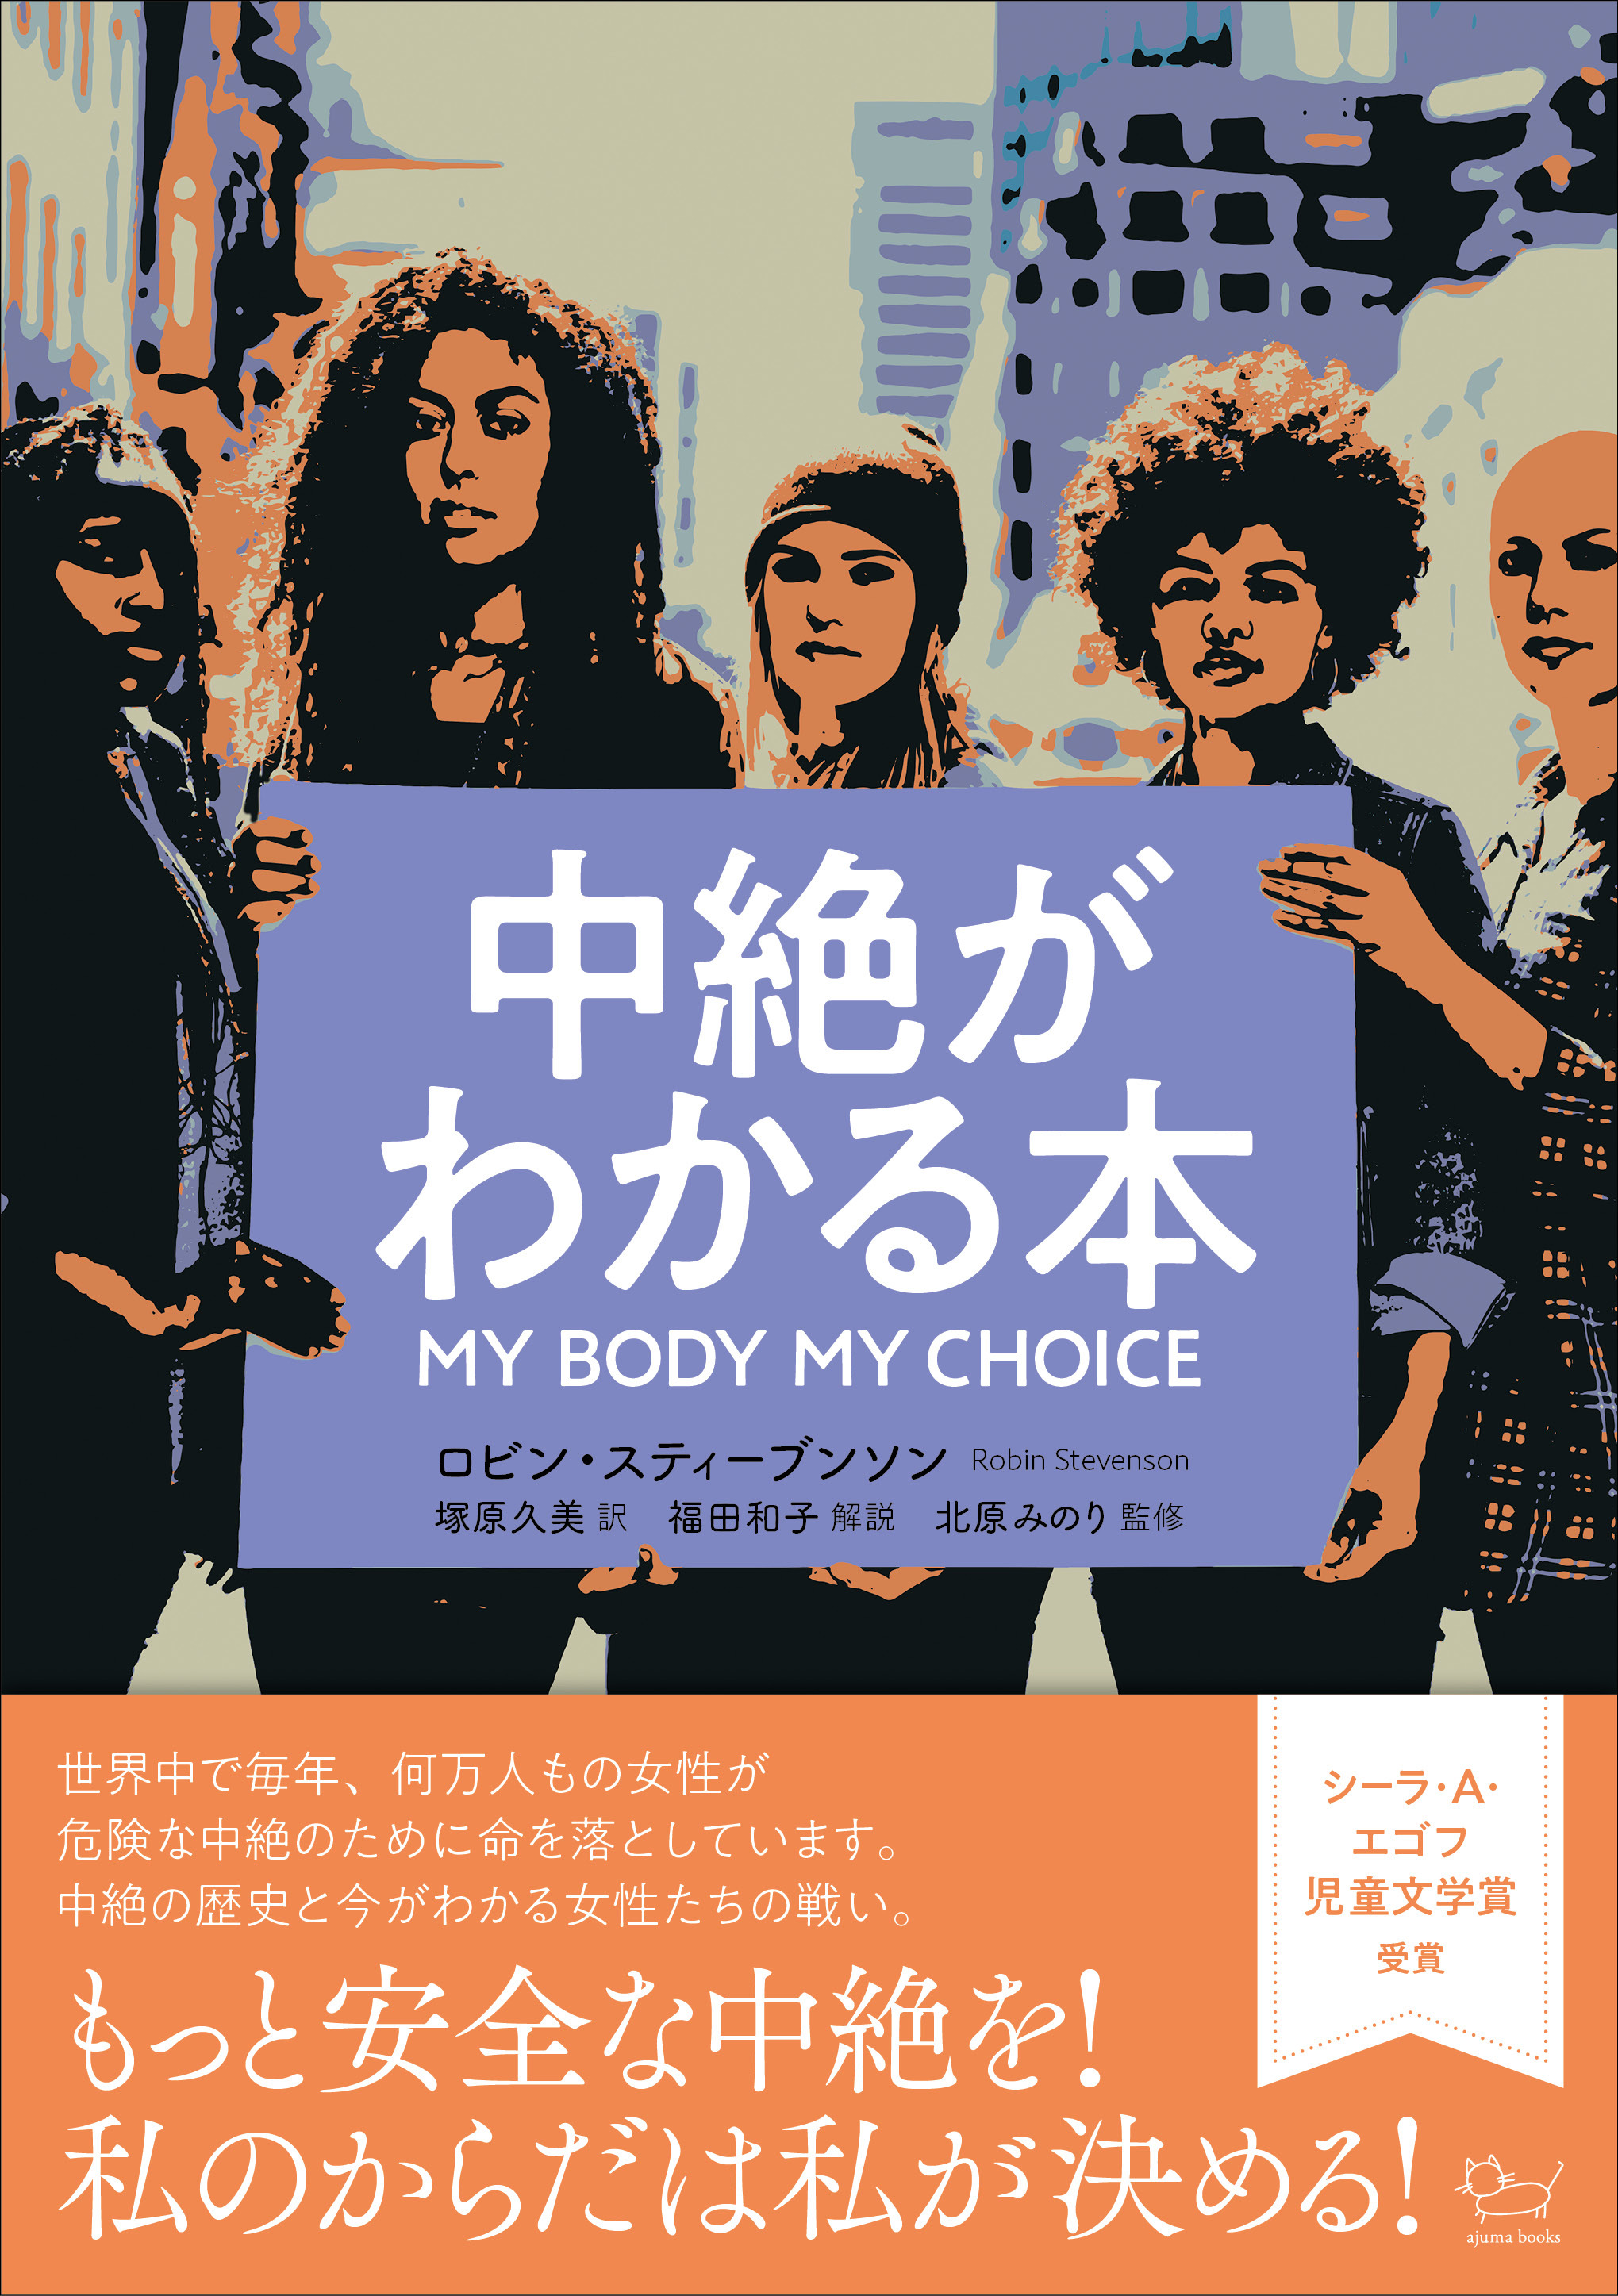 国際女性デースペシャルイベント アジュマブックス&ラブピースクラブ 「中絶がわかる本」ブックトーク